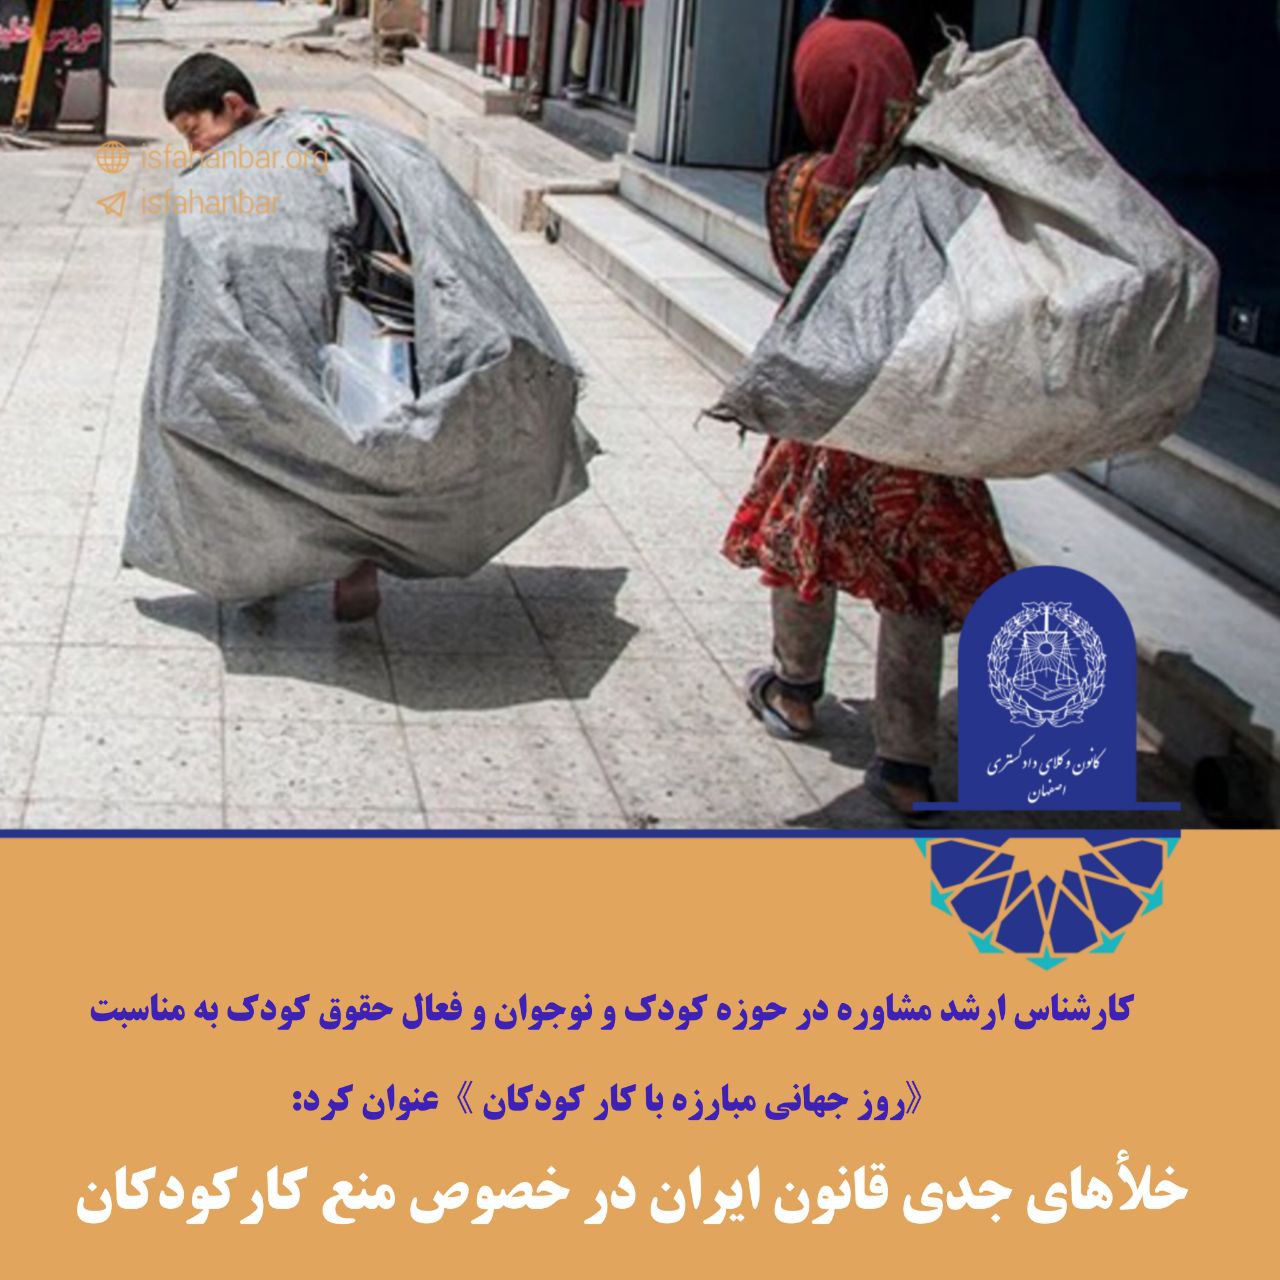 خلأهای جدی قانون ایران در خصوص منع کار کودکان